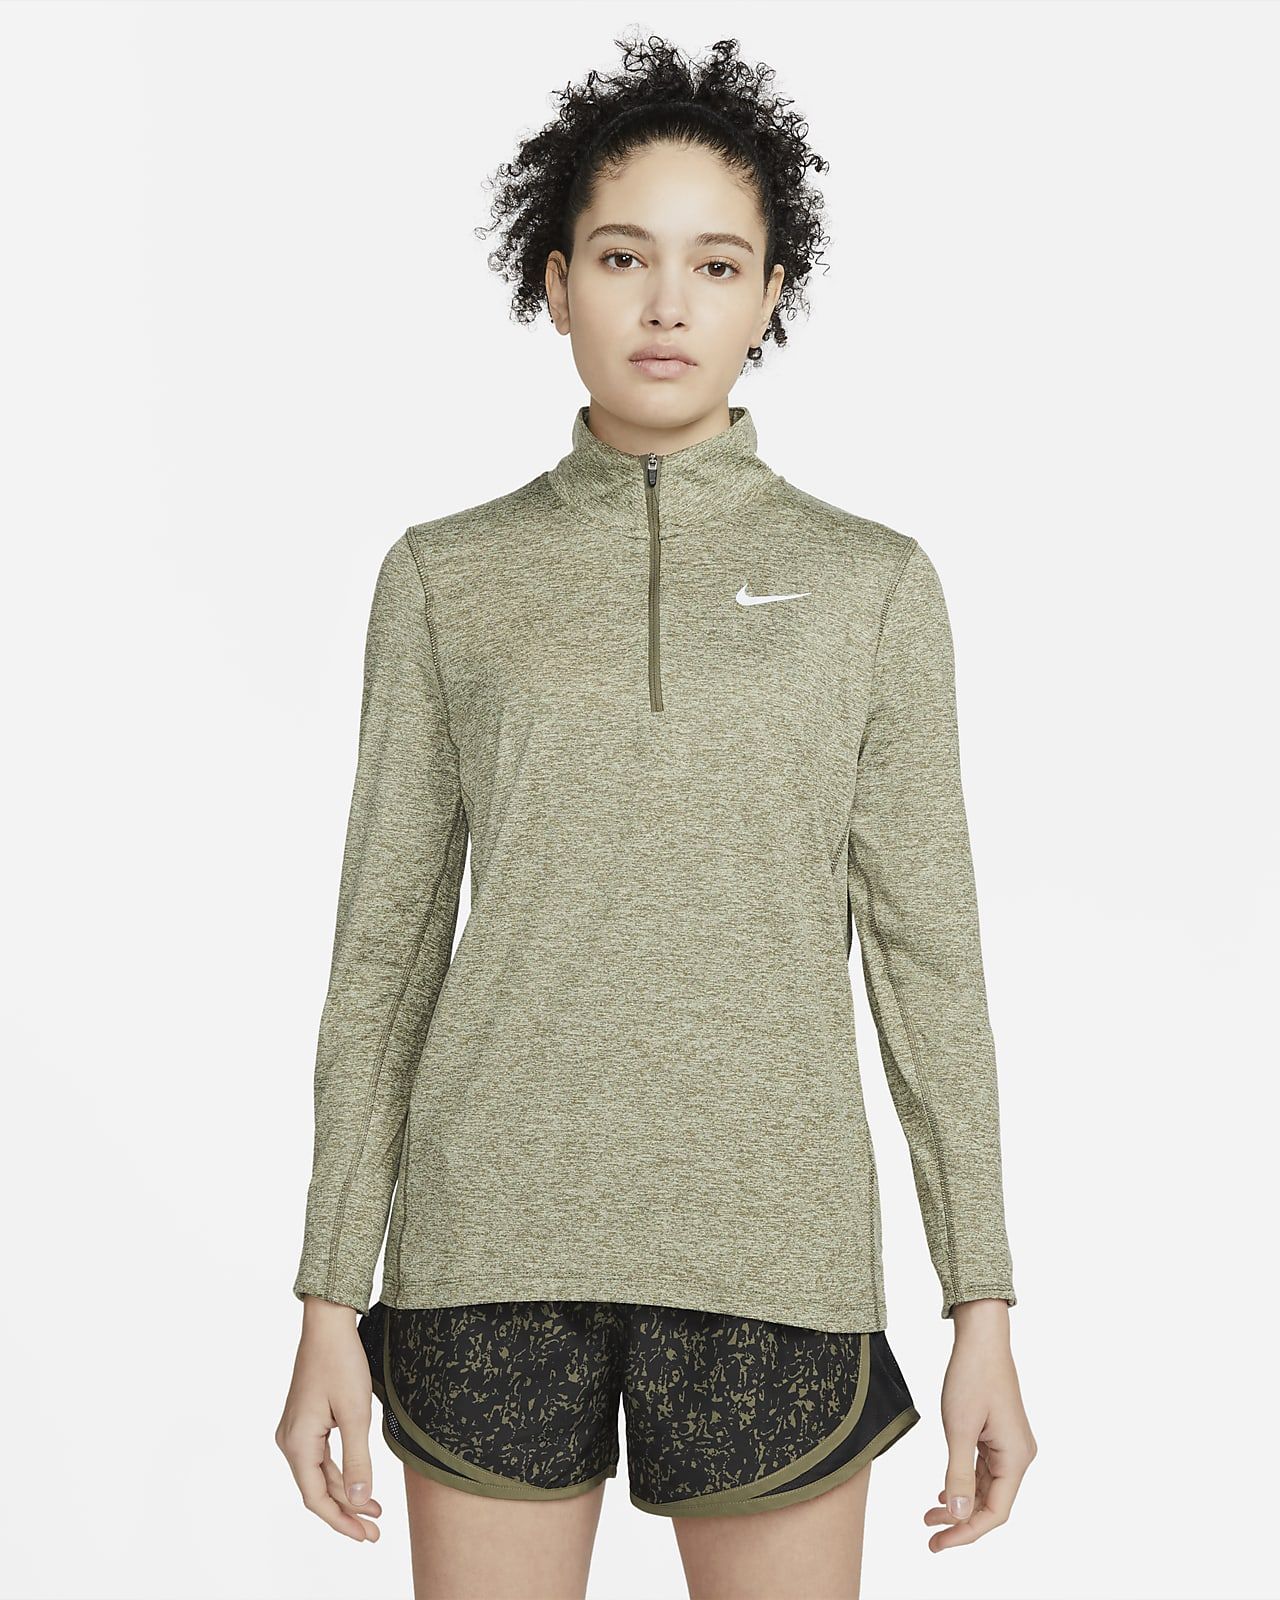 Women's 1/2-Zip Running Top | Nike (US)